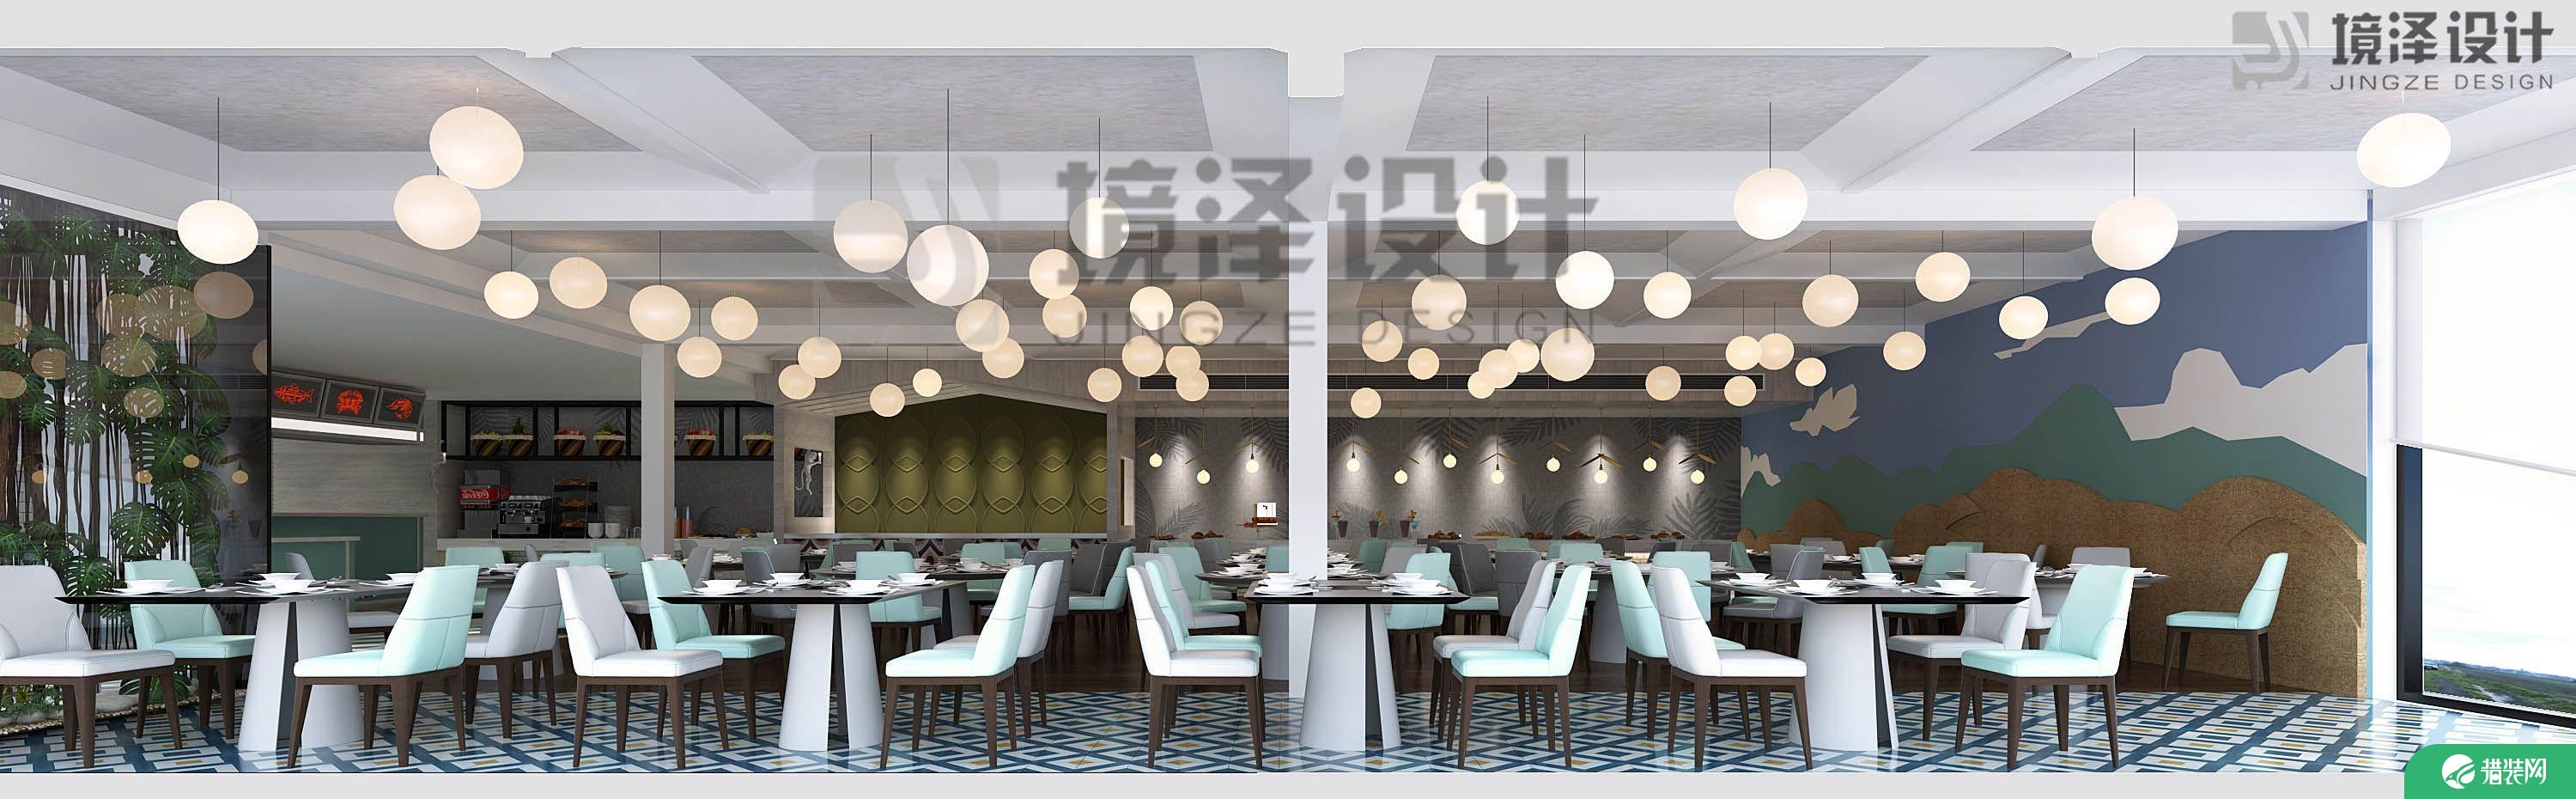 厦门菲律宾薄荷岛海鲜餐厅装修效果图